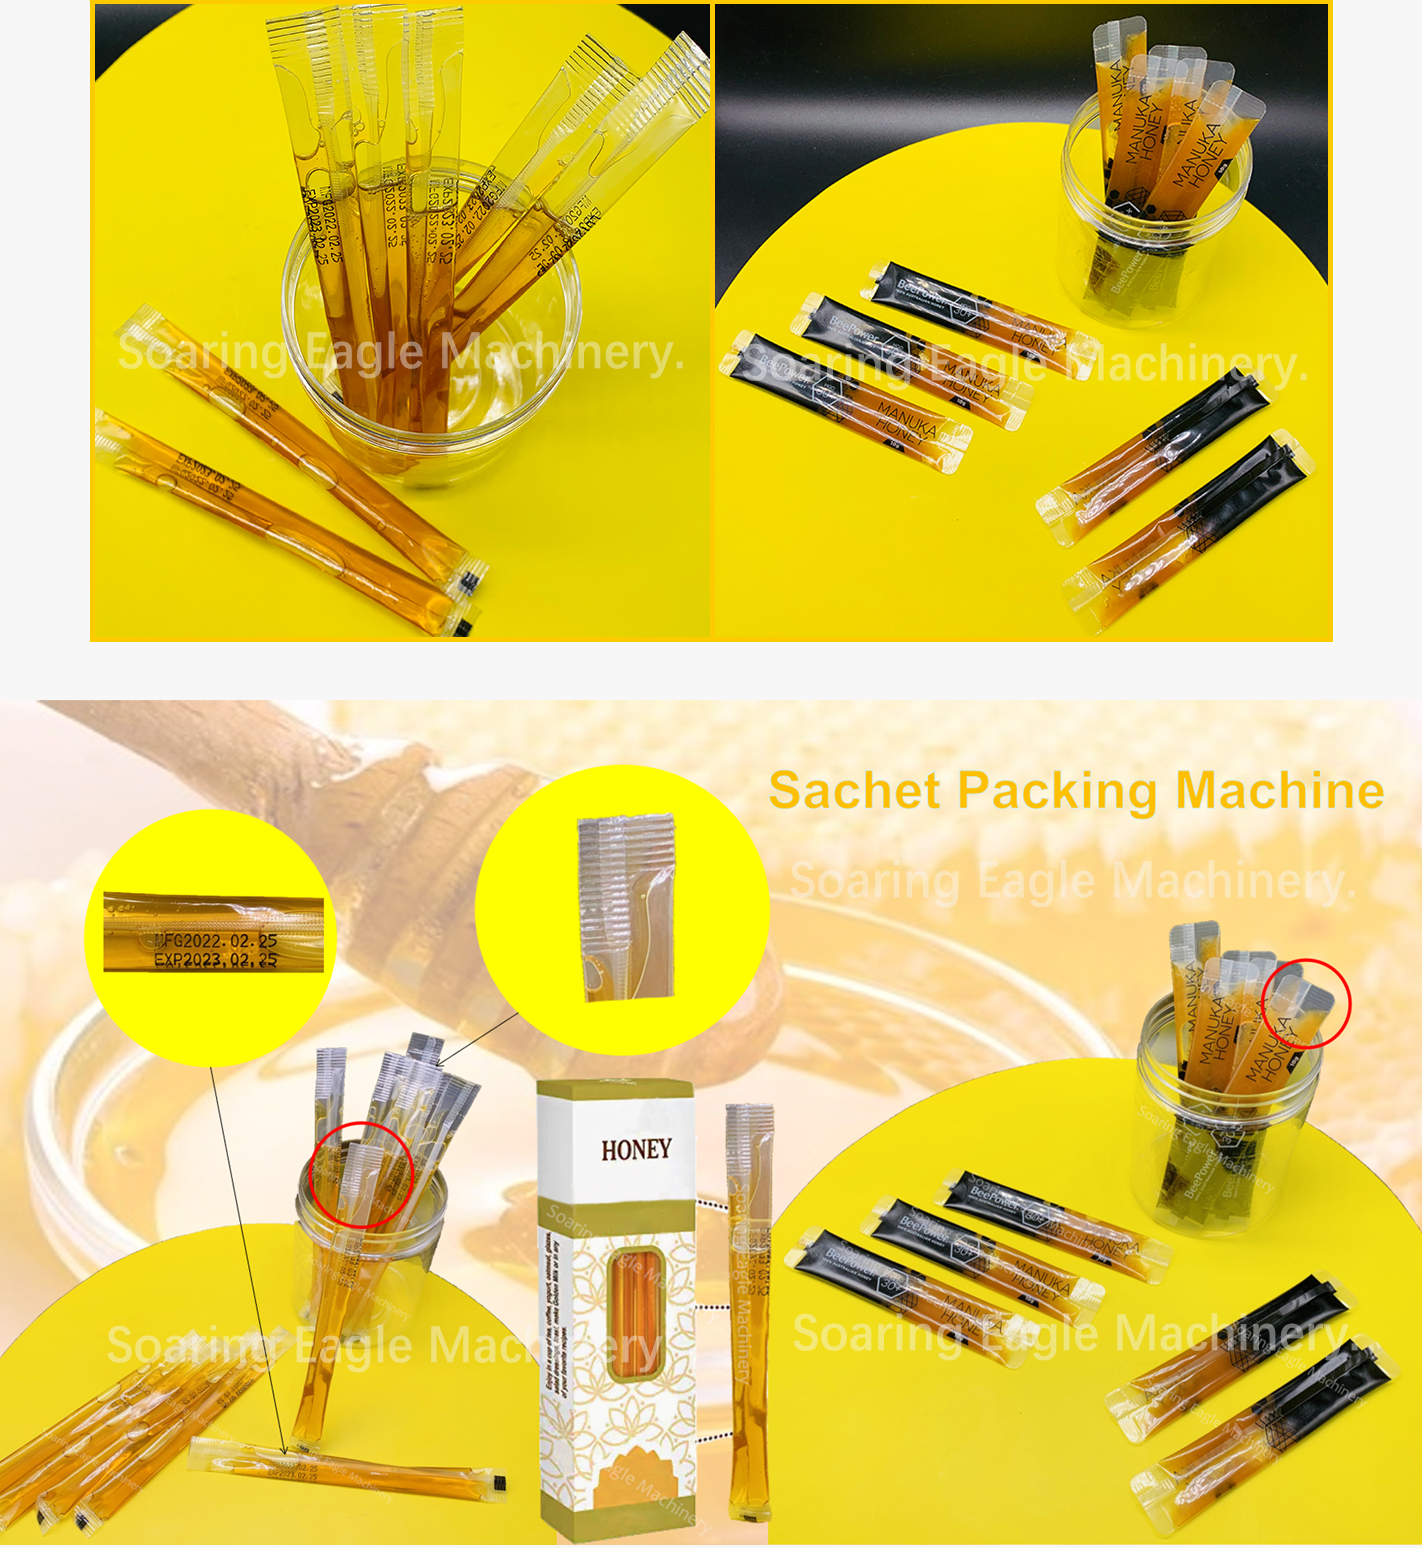 honey sachet packing machine.jpg